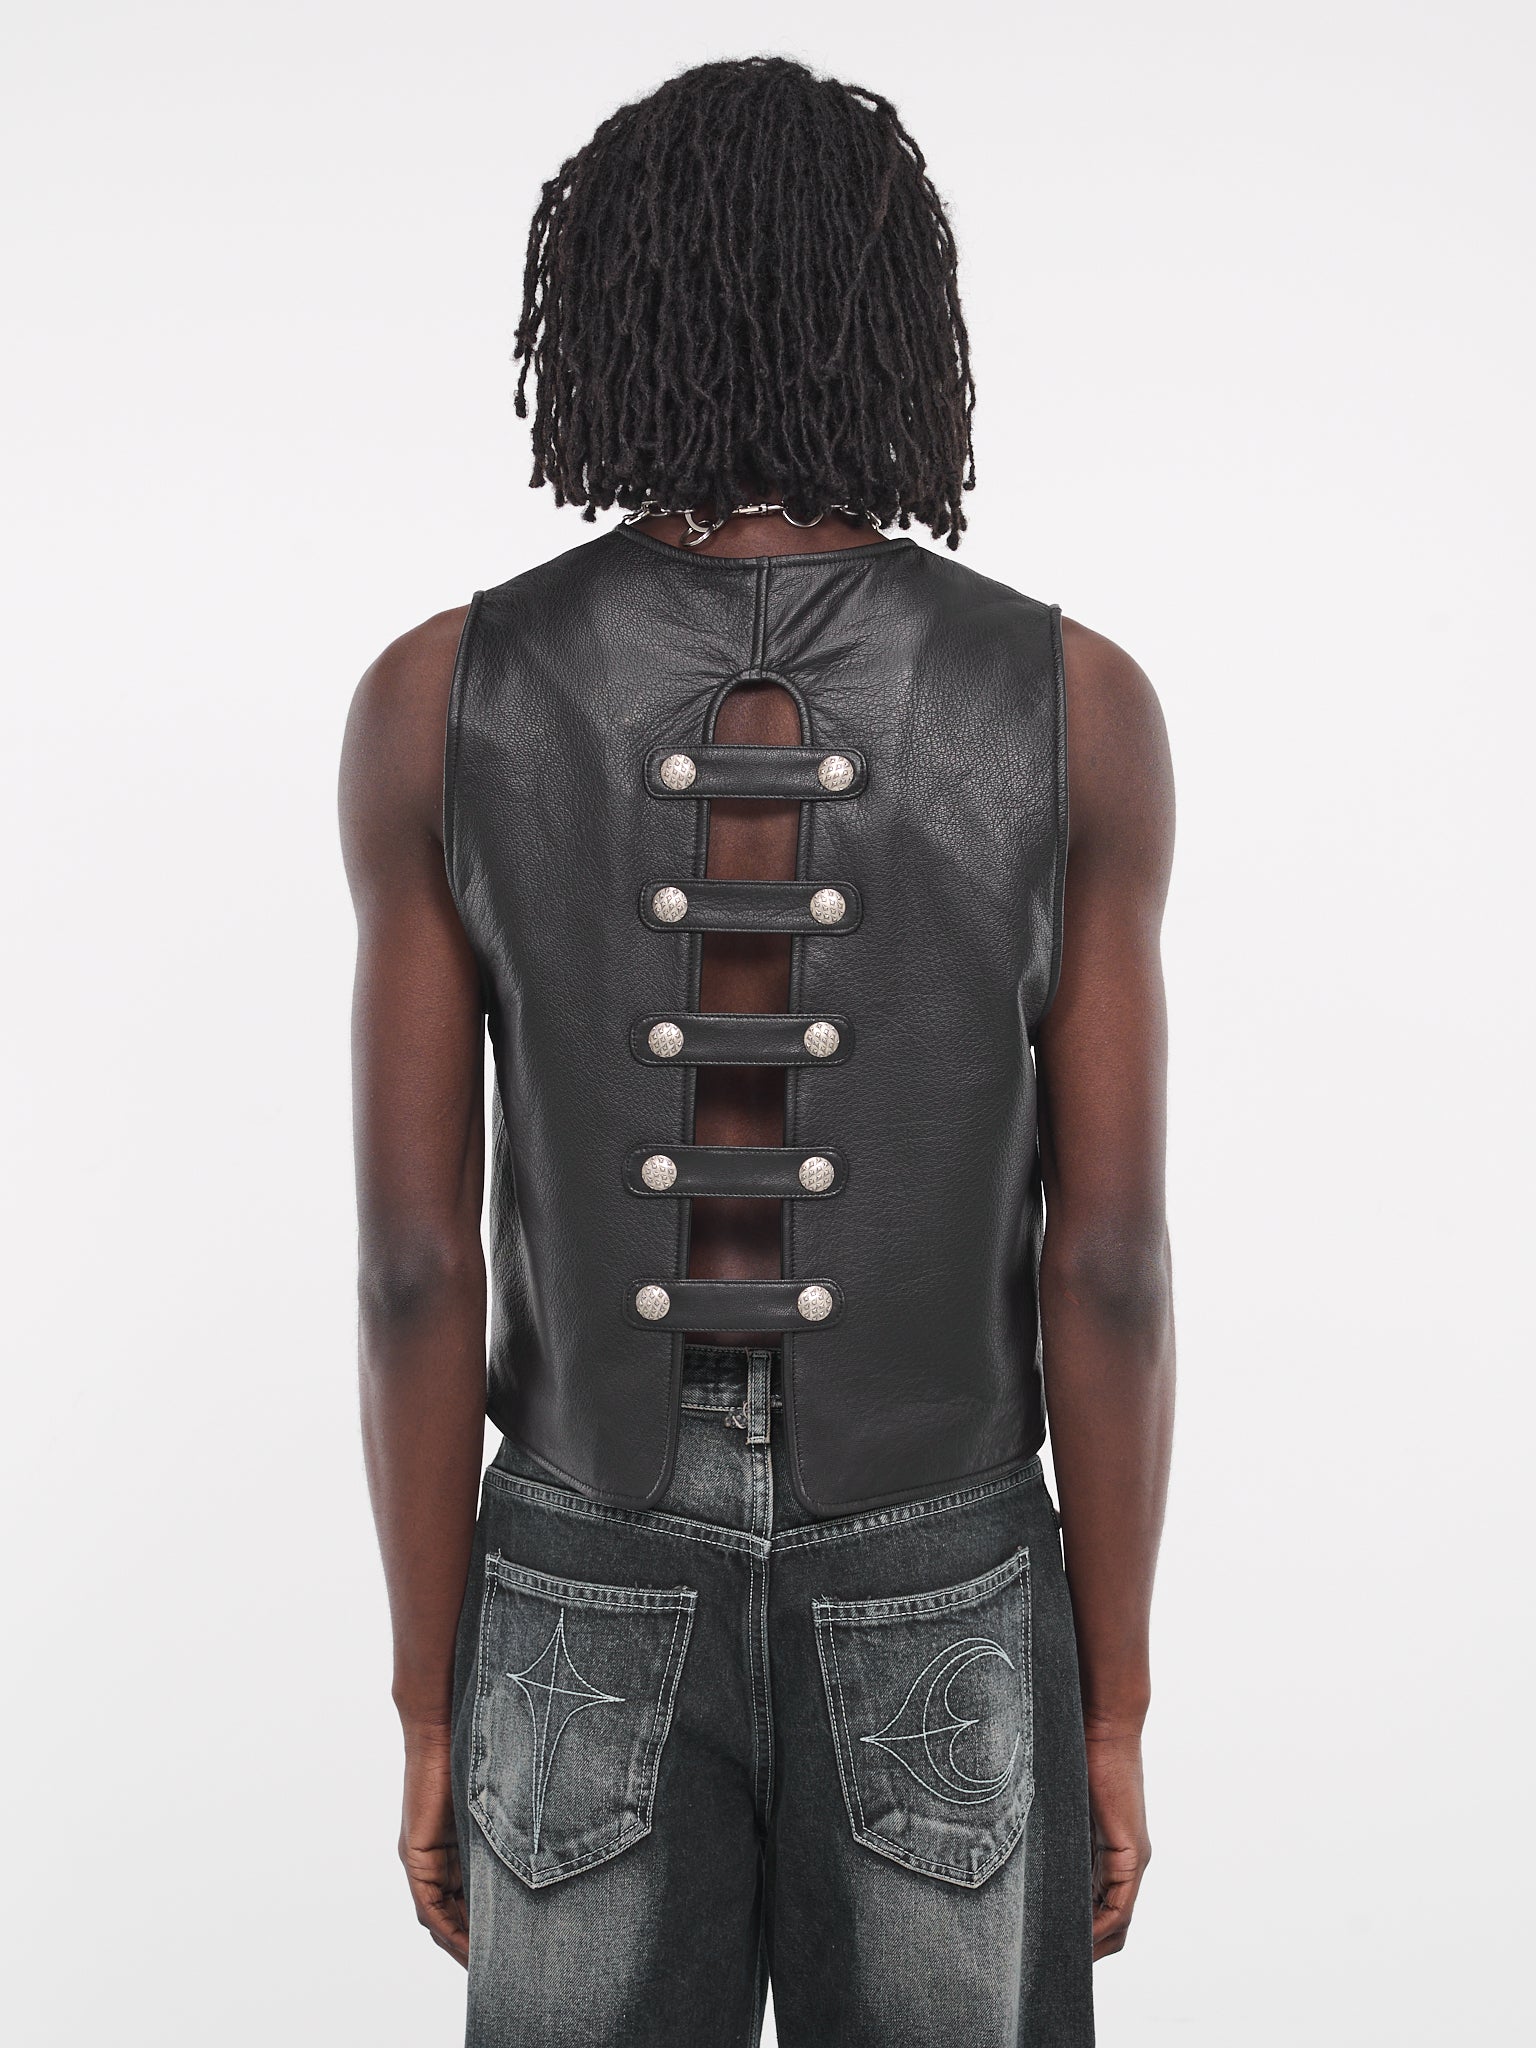 Goat Skin Leather Vest (JK0503-BLACK)